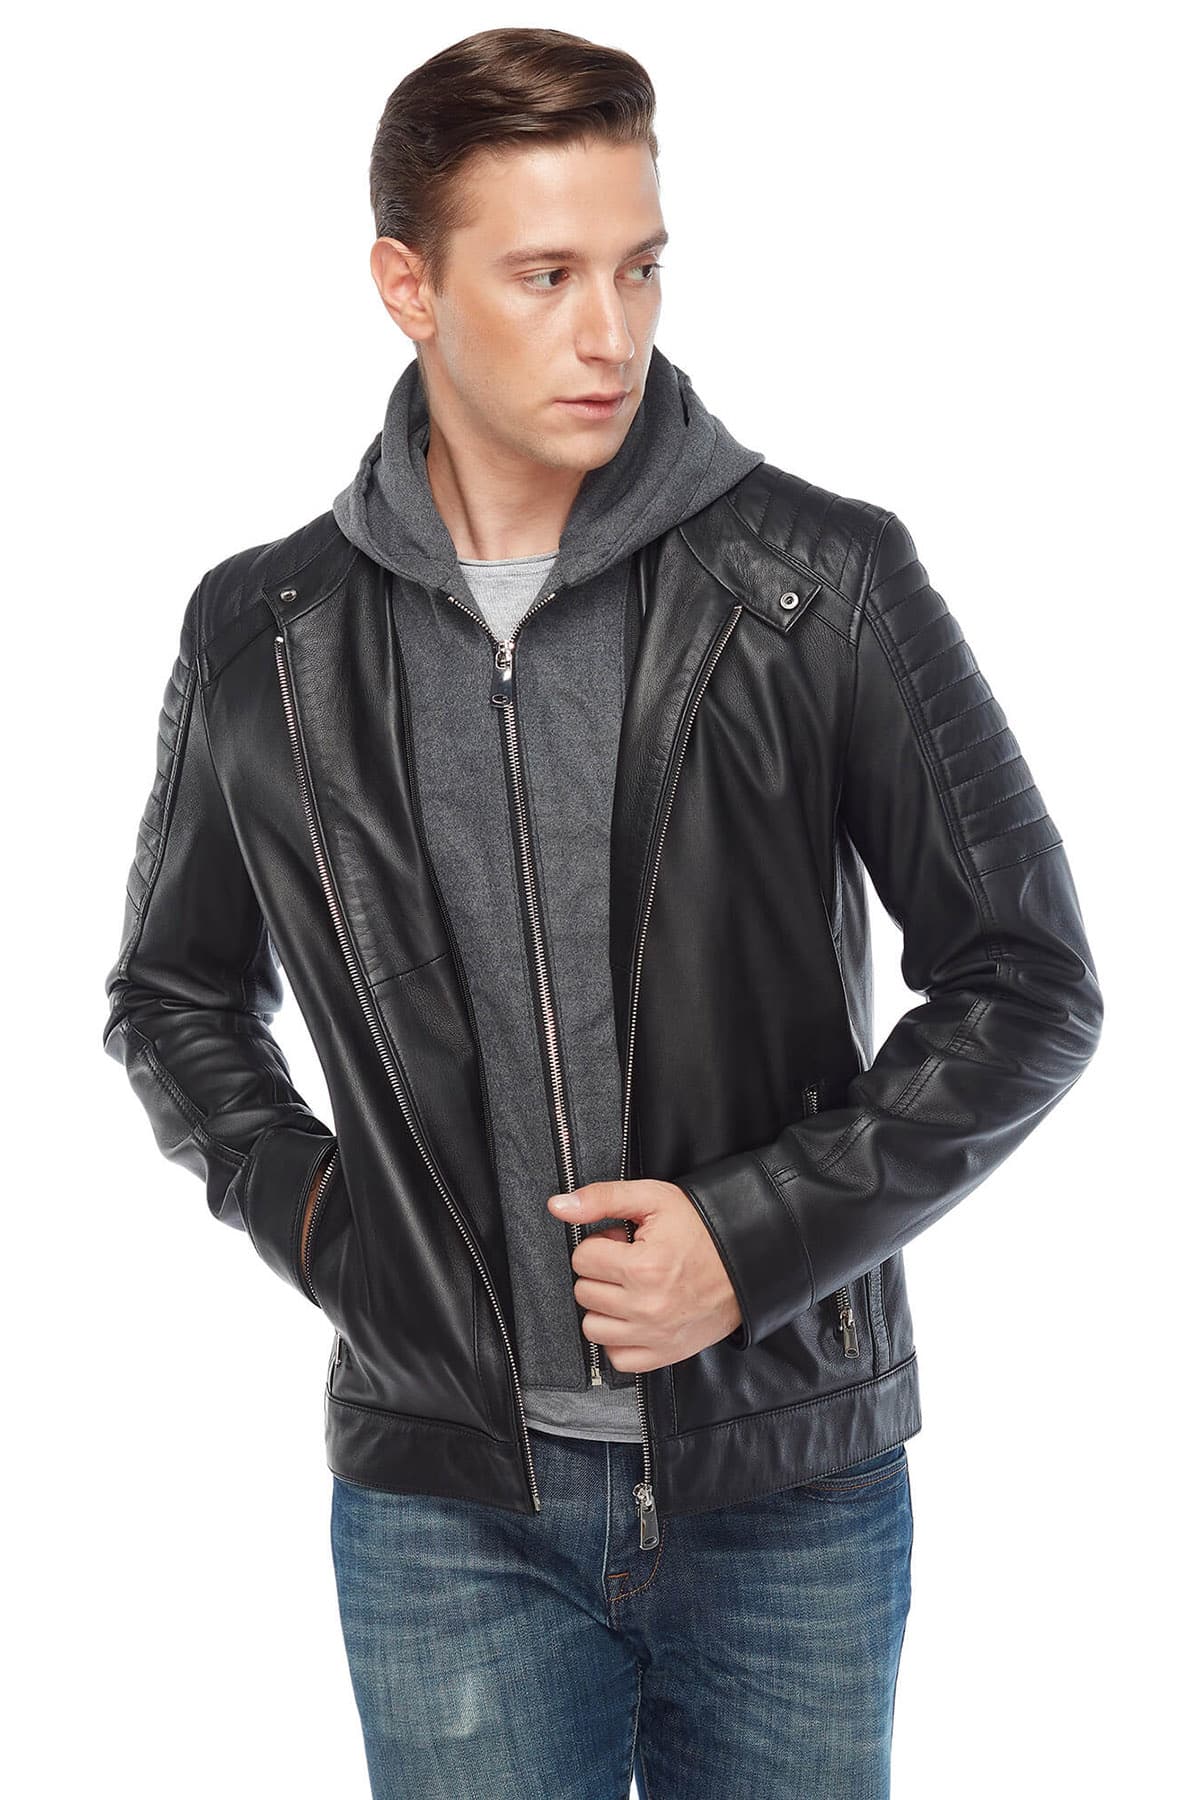 Mahir Bajramoski Men's 100 % Real Black Leather Hooded Jacket